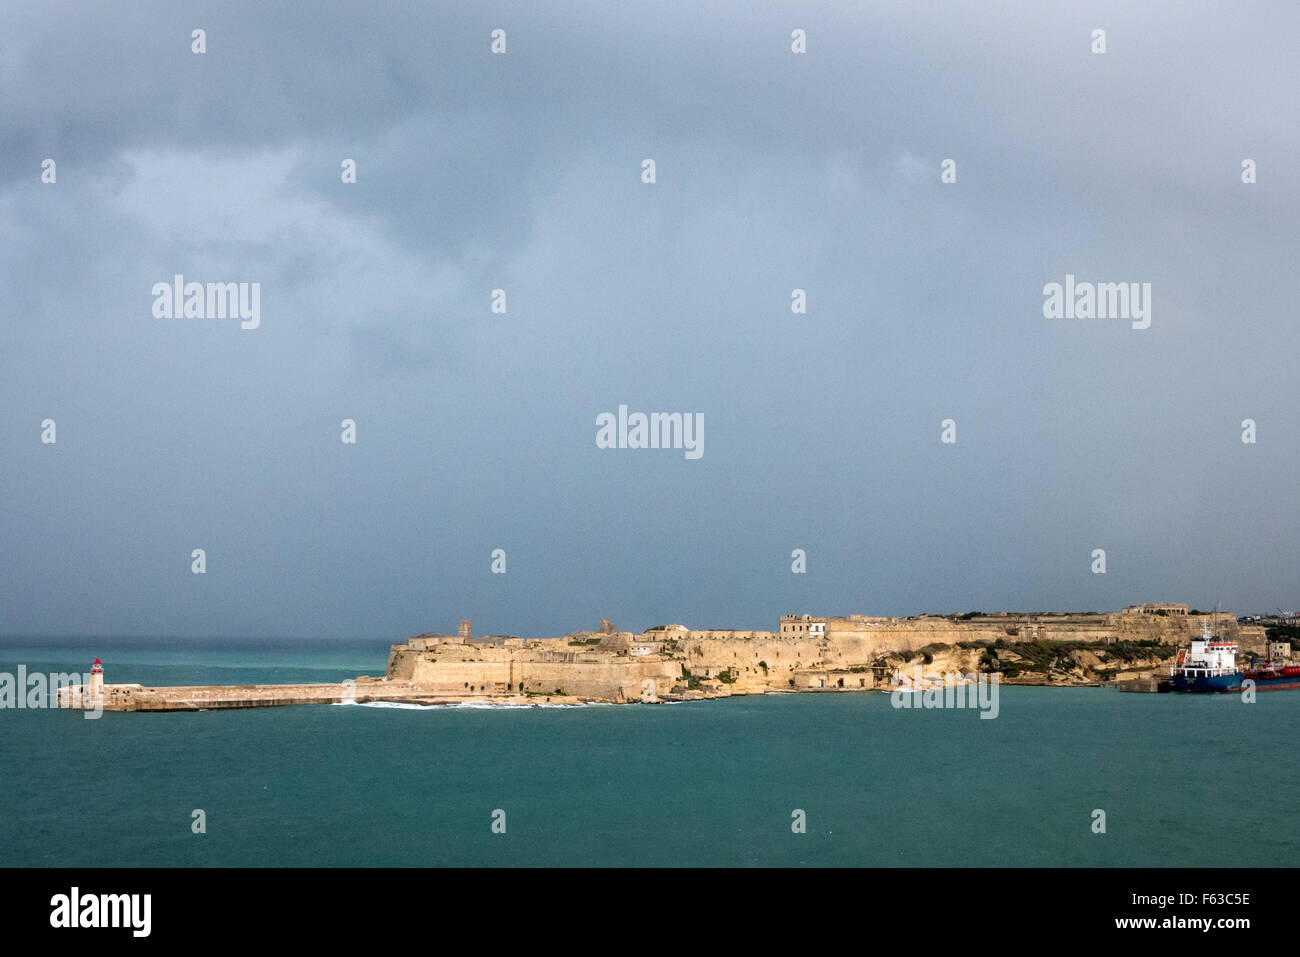 La lumière du soleil sur un jour de tempête sur le mur du port de La Valette à Malte. Banque D'Images